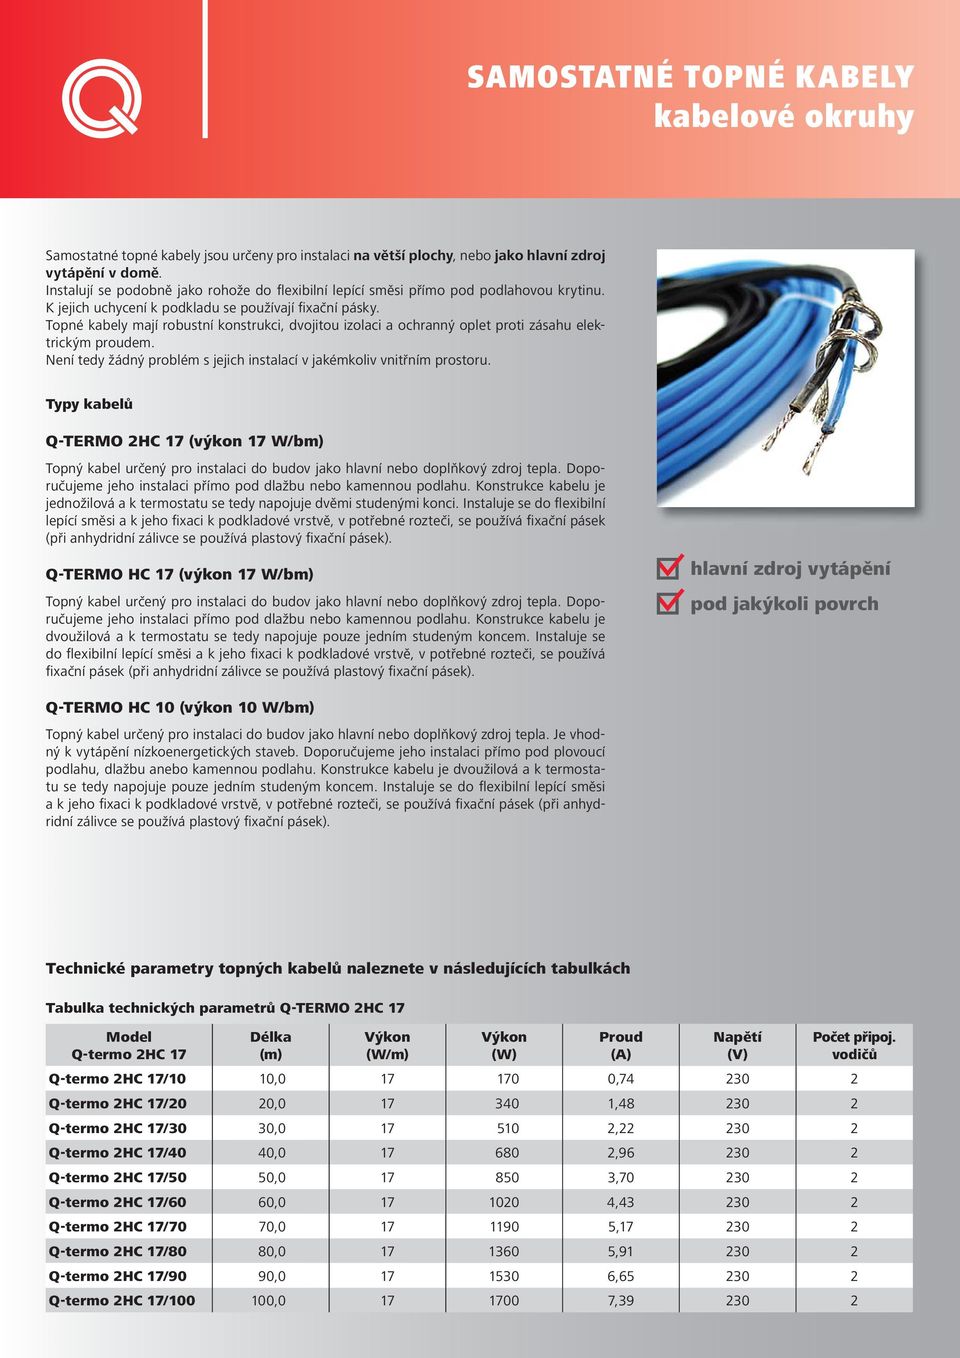 Topné kabely mají robustní konstrukci, dvojitou izolaci a ochranný oplet proti zásahu elektrickým proudem. Není tedy žádný problém s jejich instalací v jakémkoliv vnitřním prostoru.